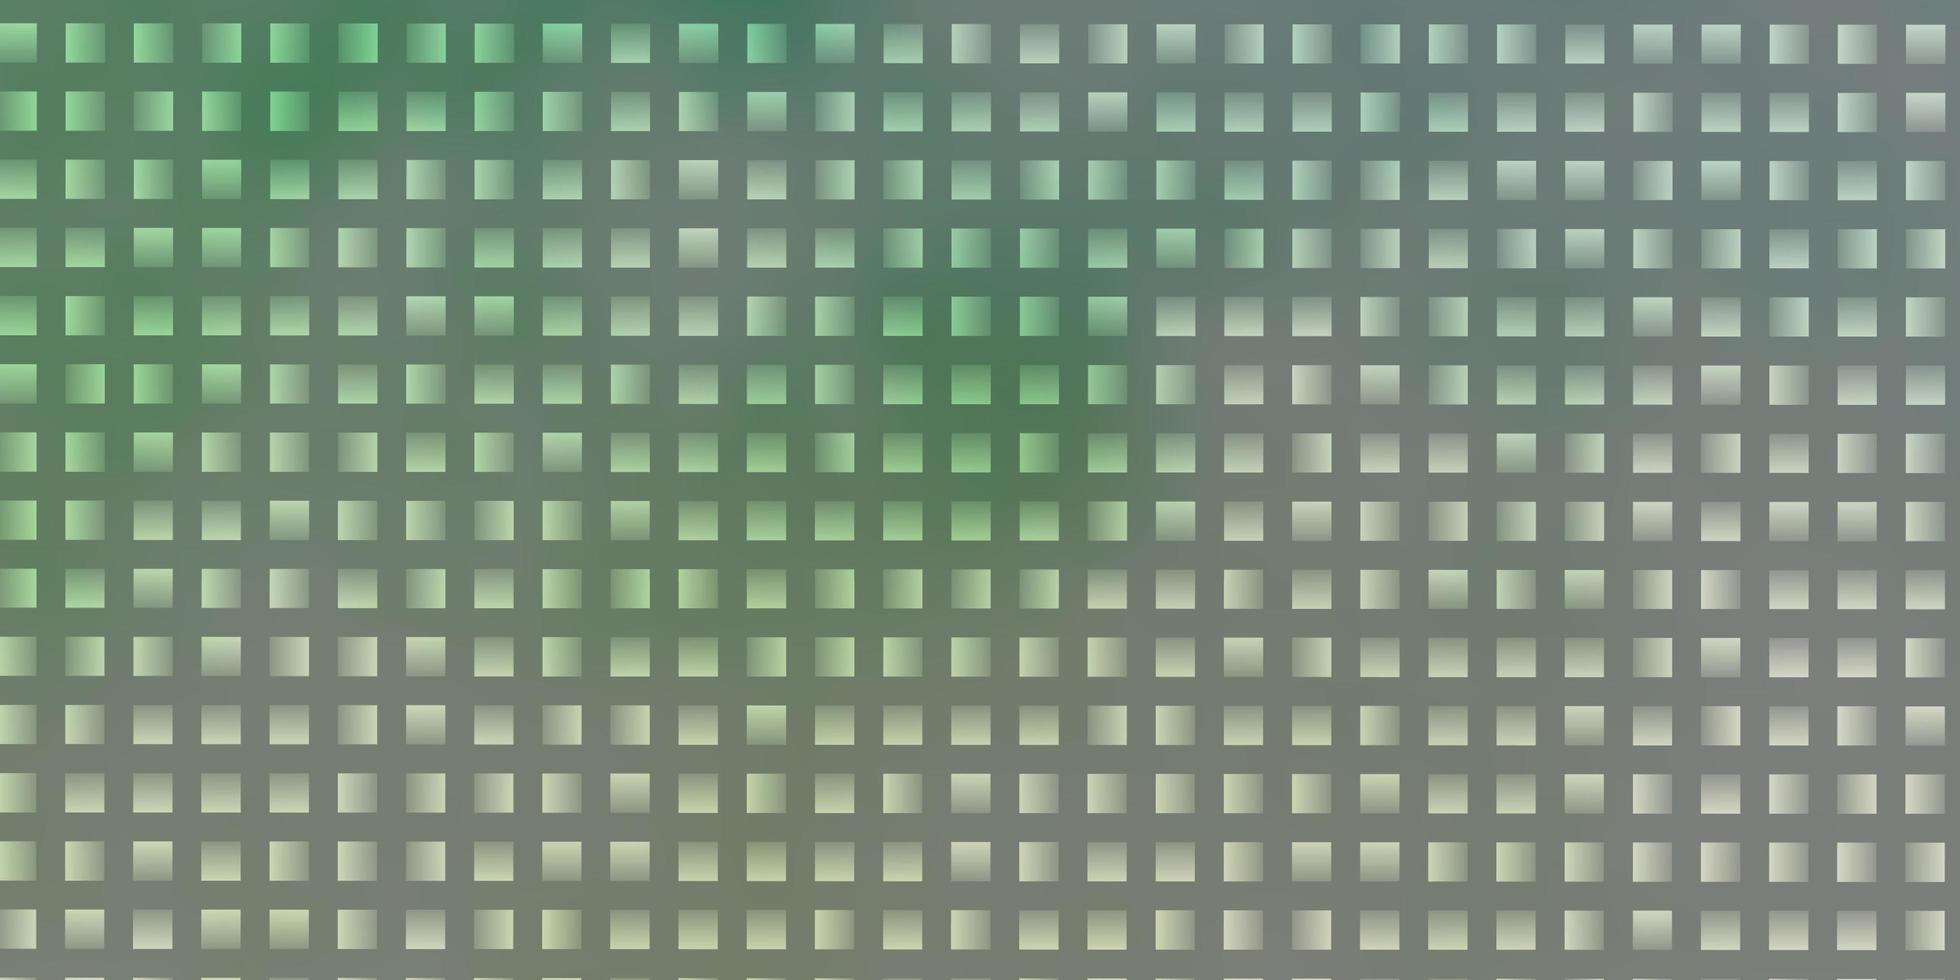 plantilla verde claro con rectángulos. vector